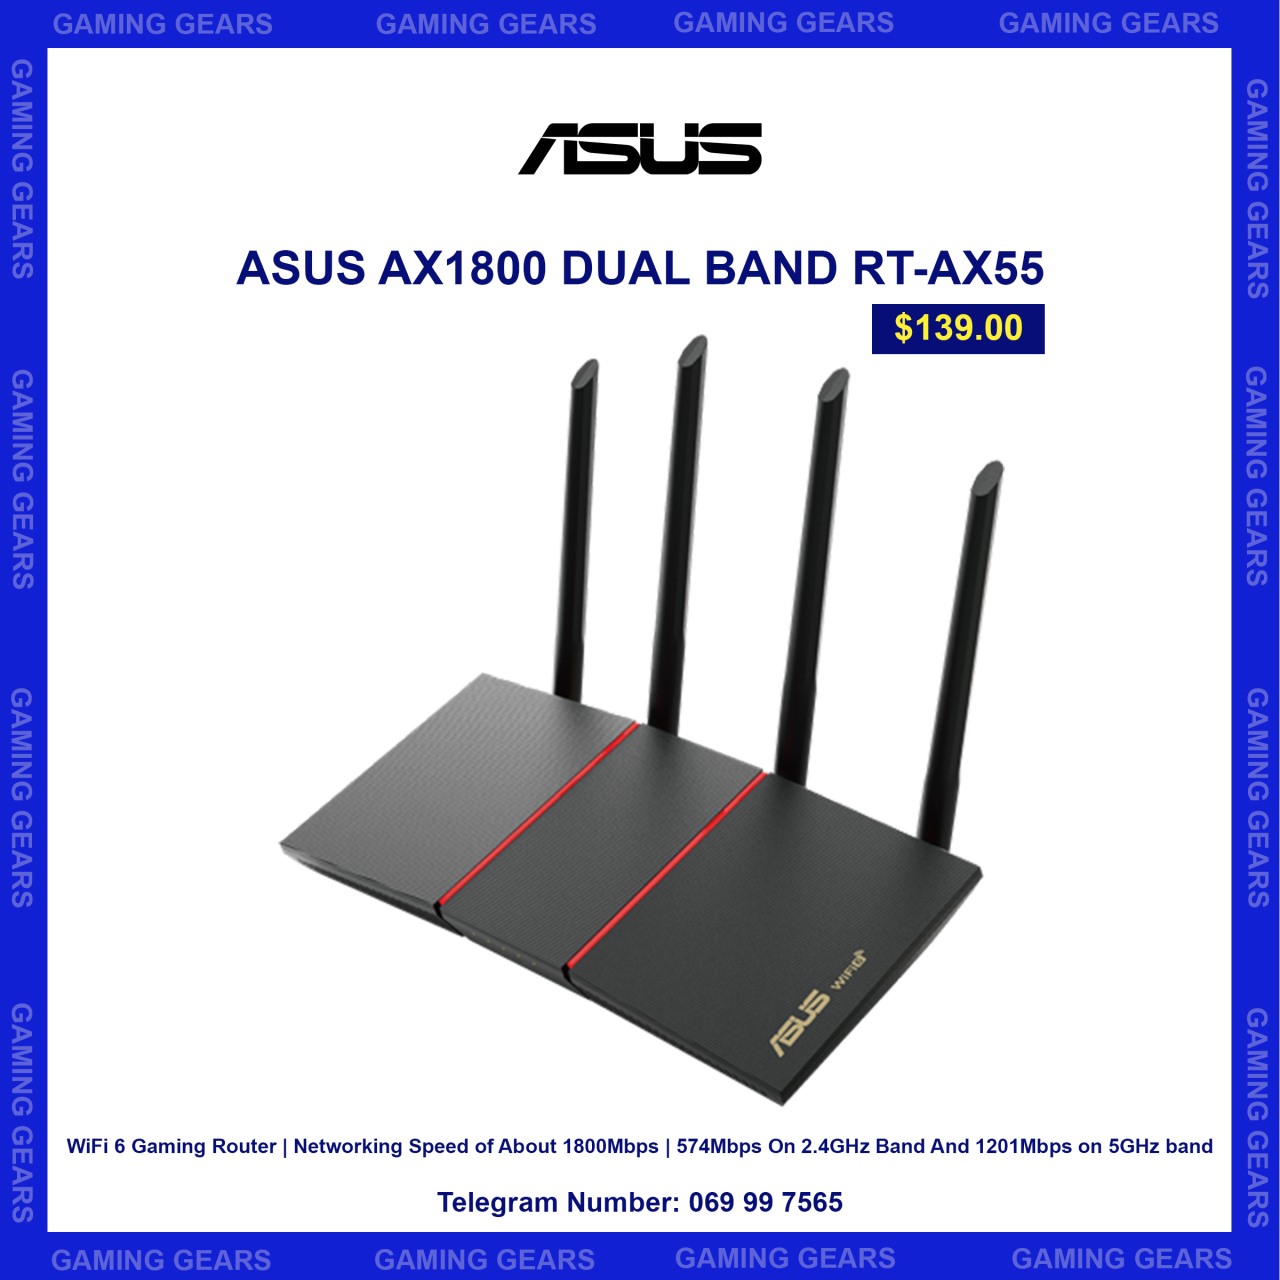 ASUS AX1800 DUAL BAND RT-AX55